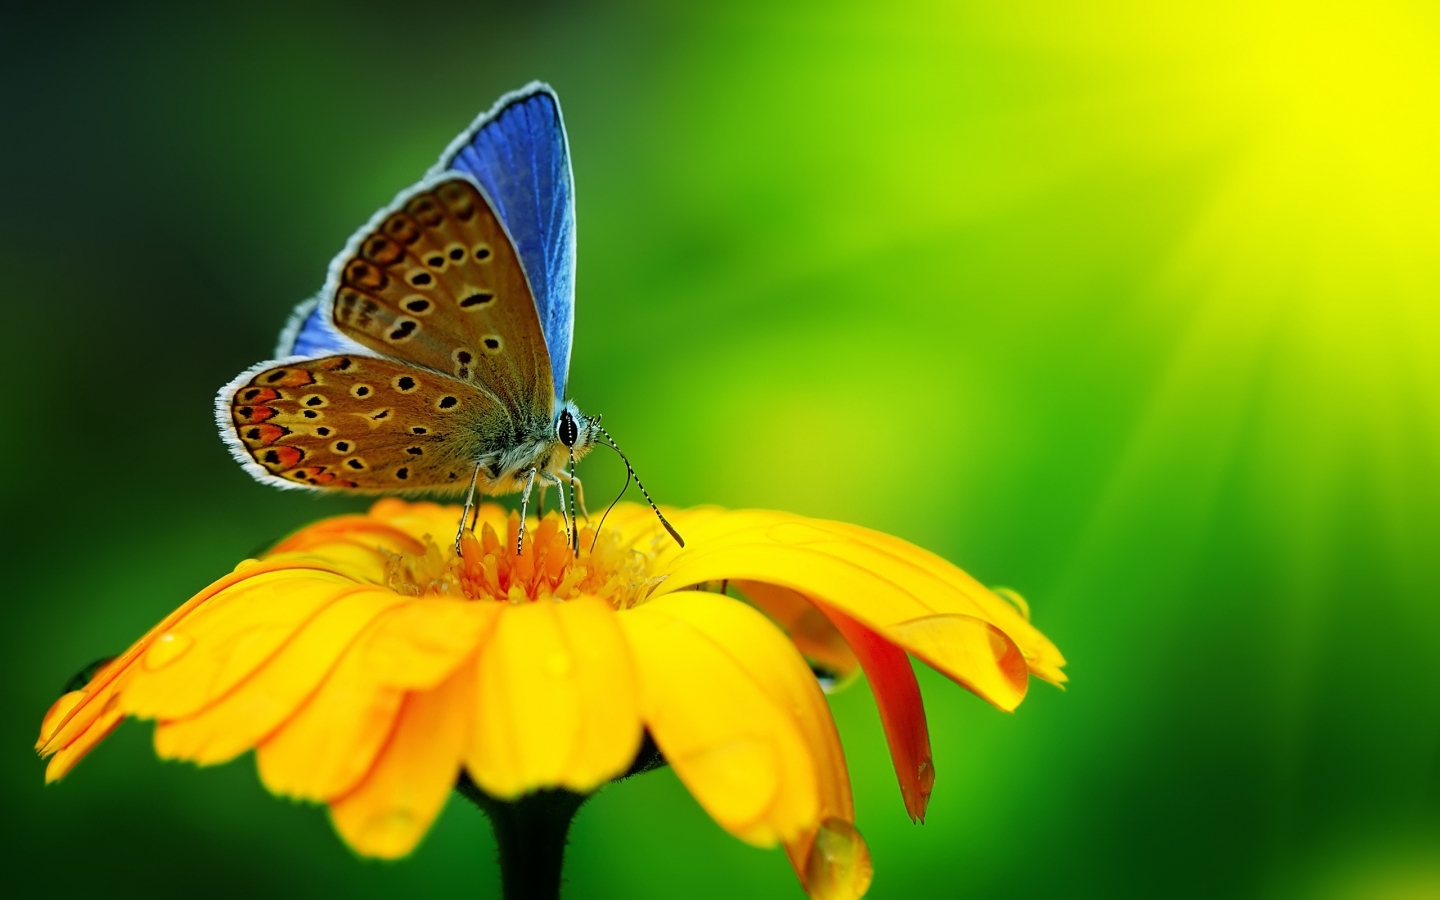 Butterfly Pollen for 1440 x 900 widescreen resolution